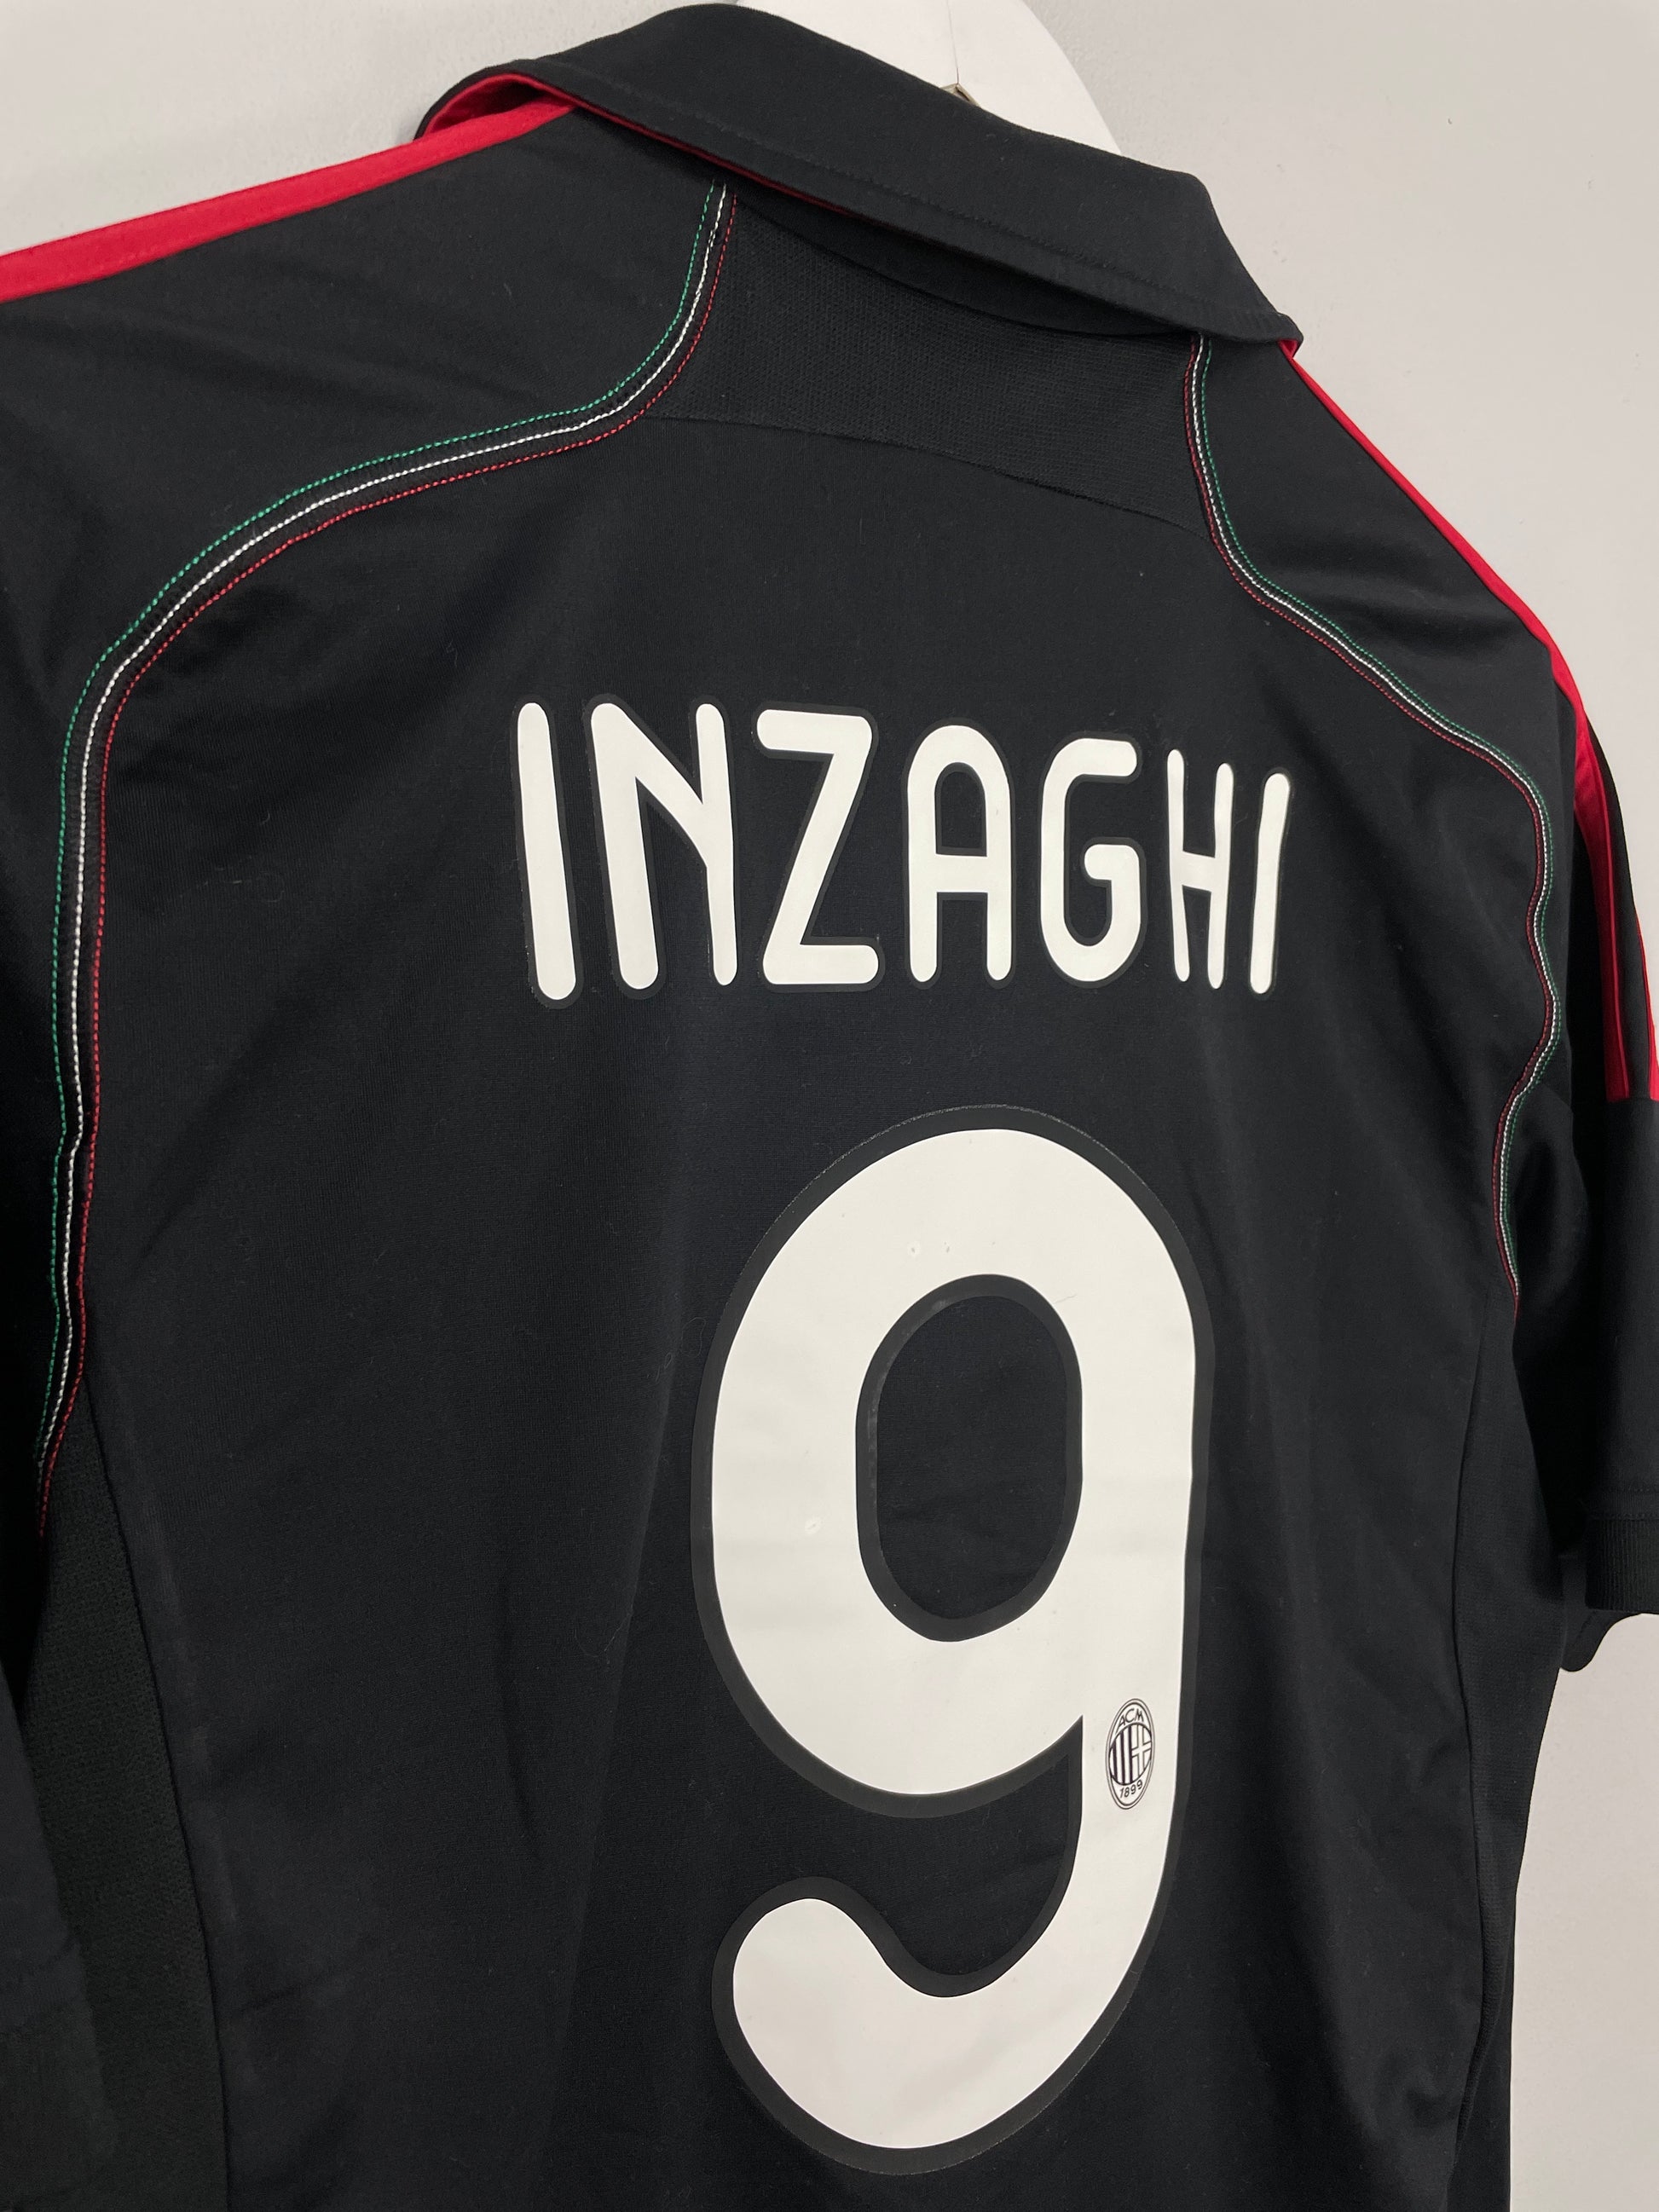 2012-13 AC Milan Third Shirt - 9/10 - (XL)